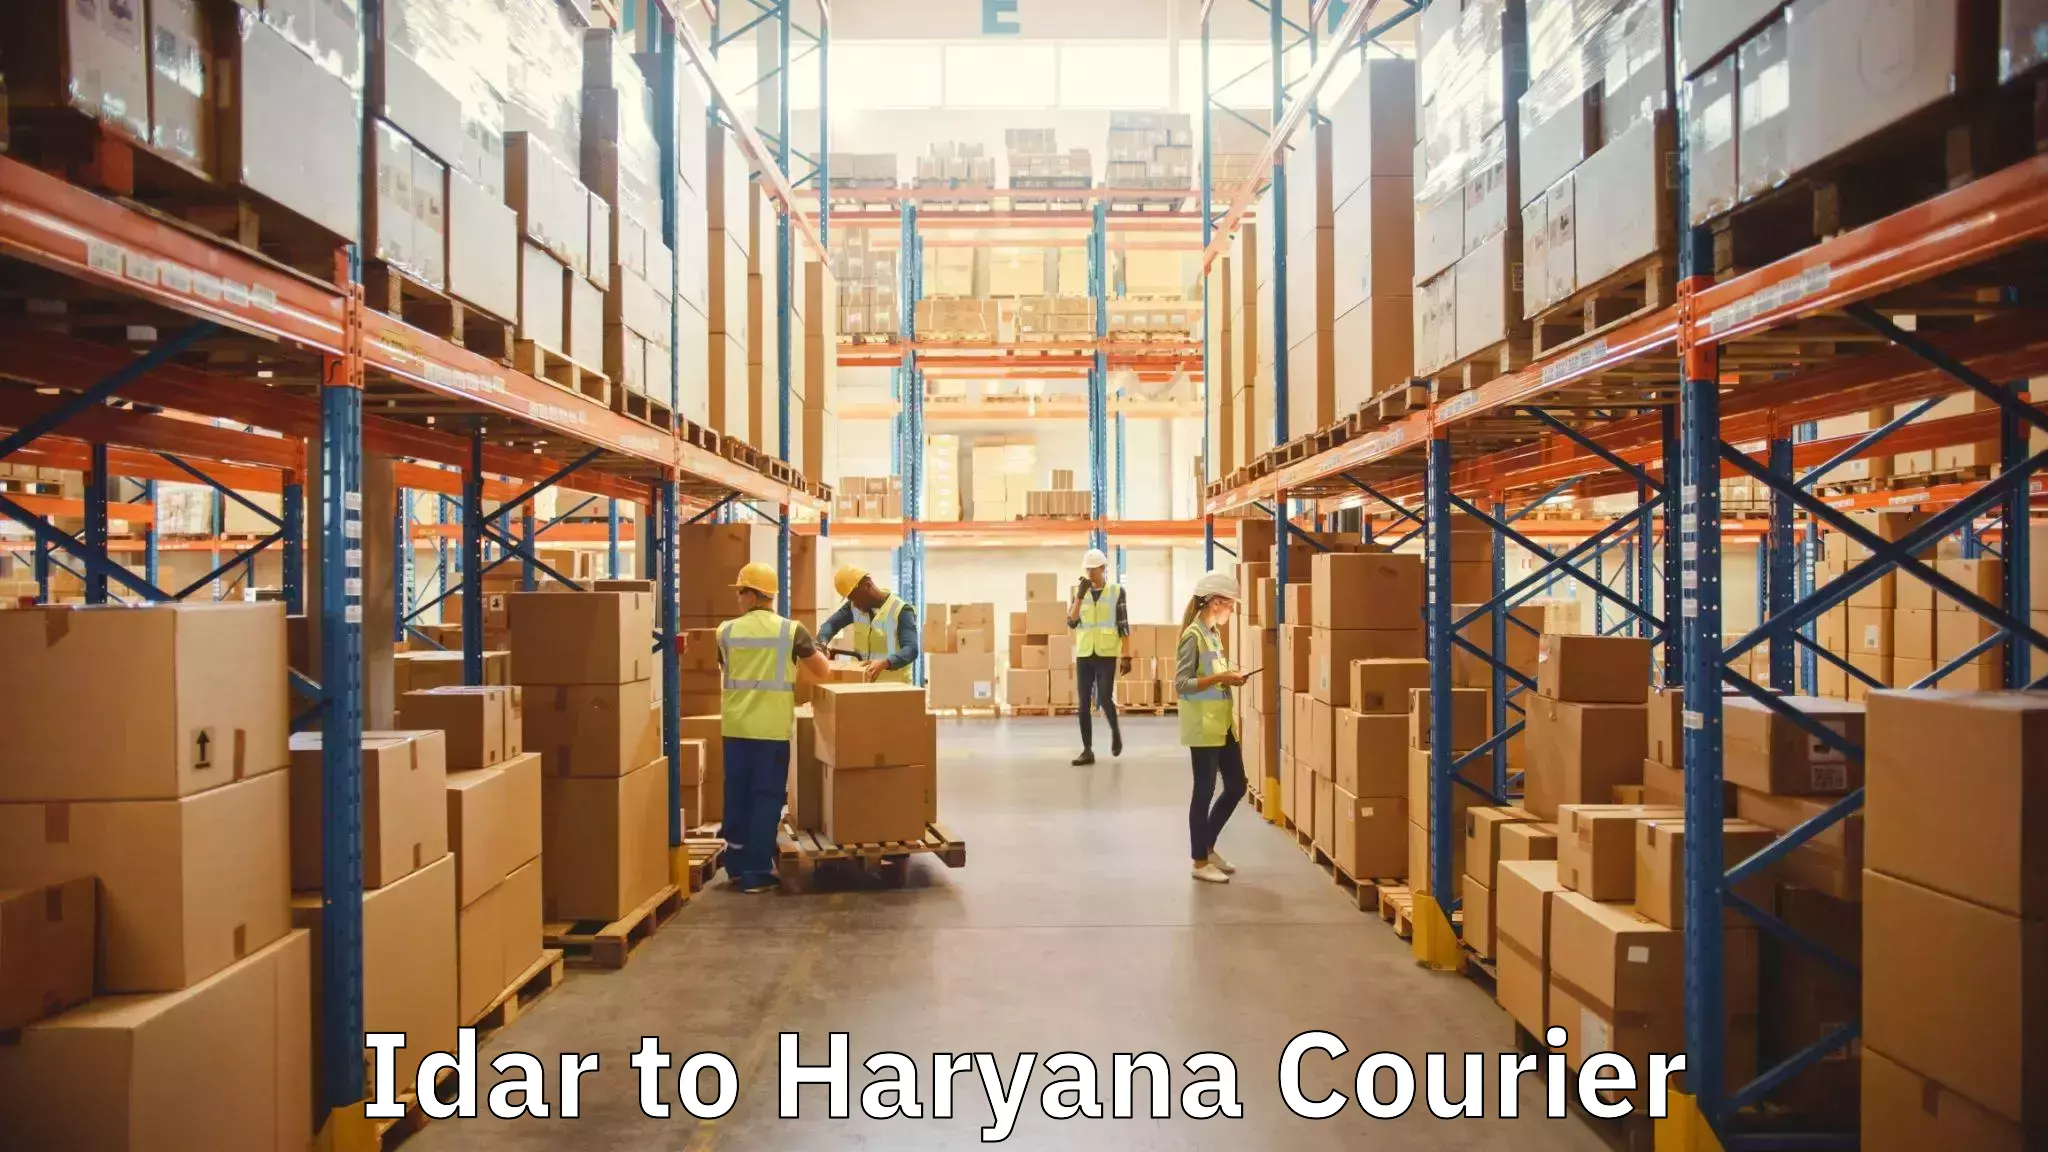 Furniture moving experts Idar to Haryana